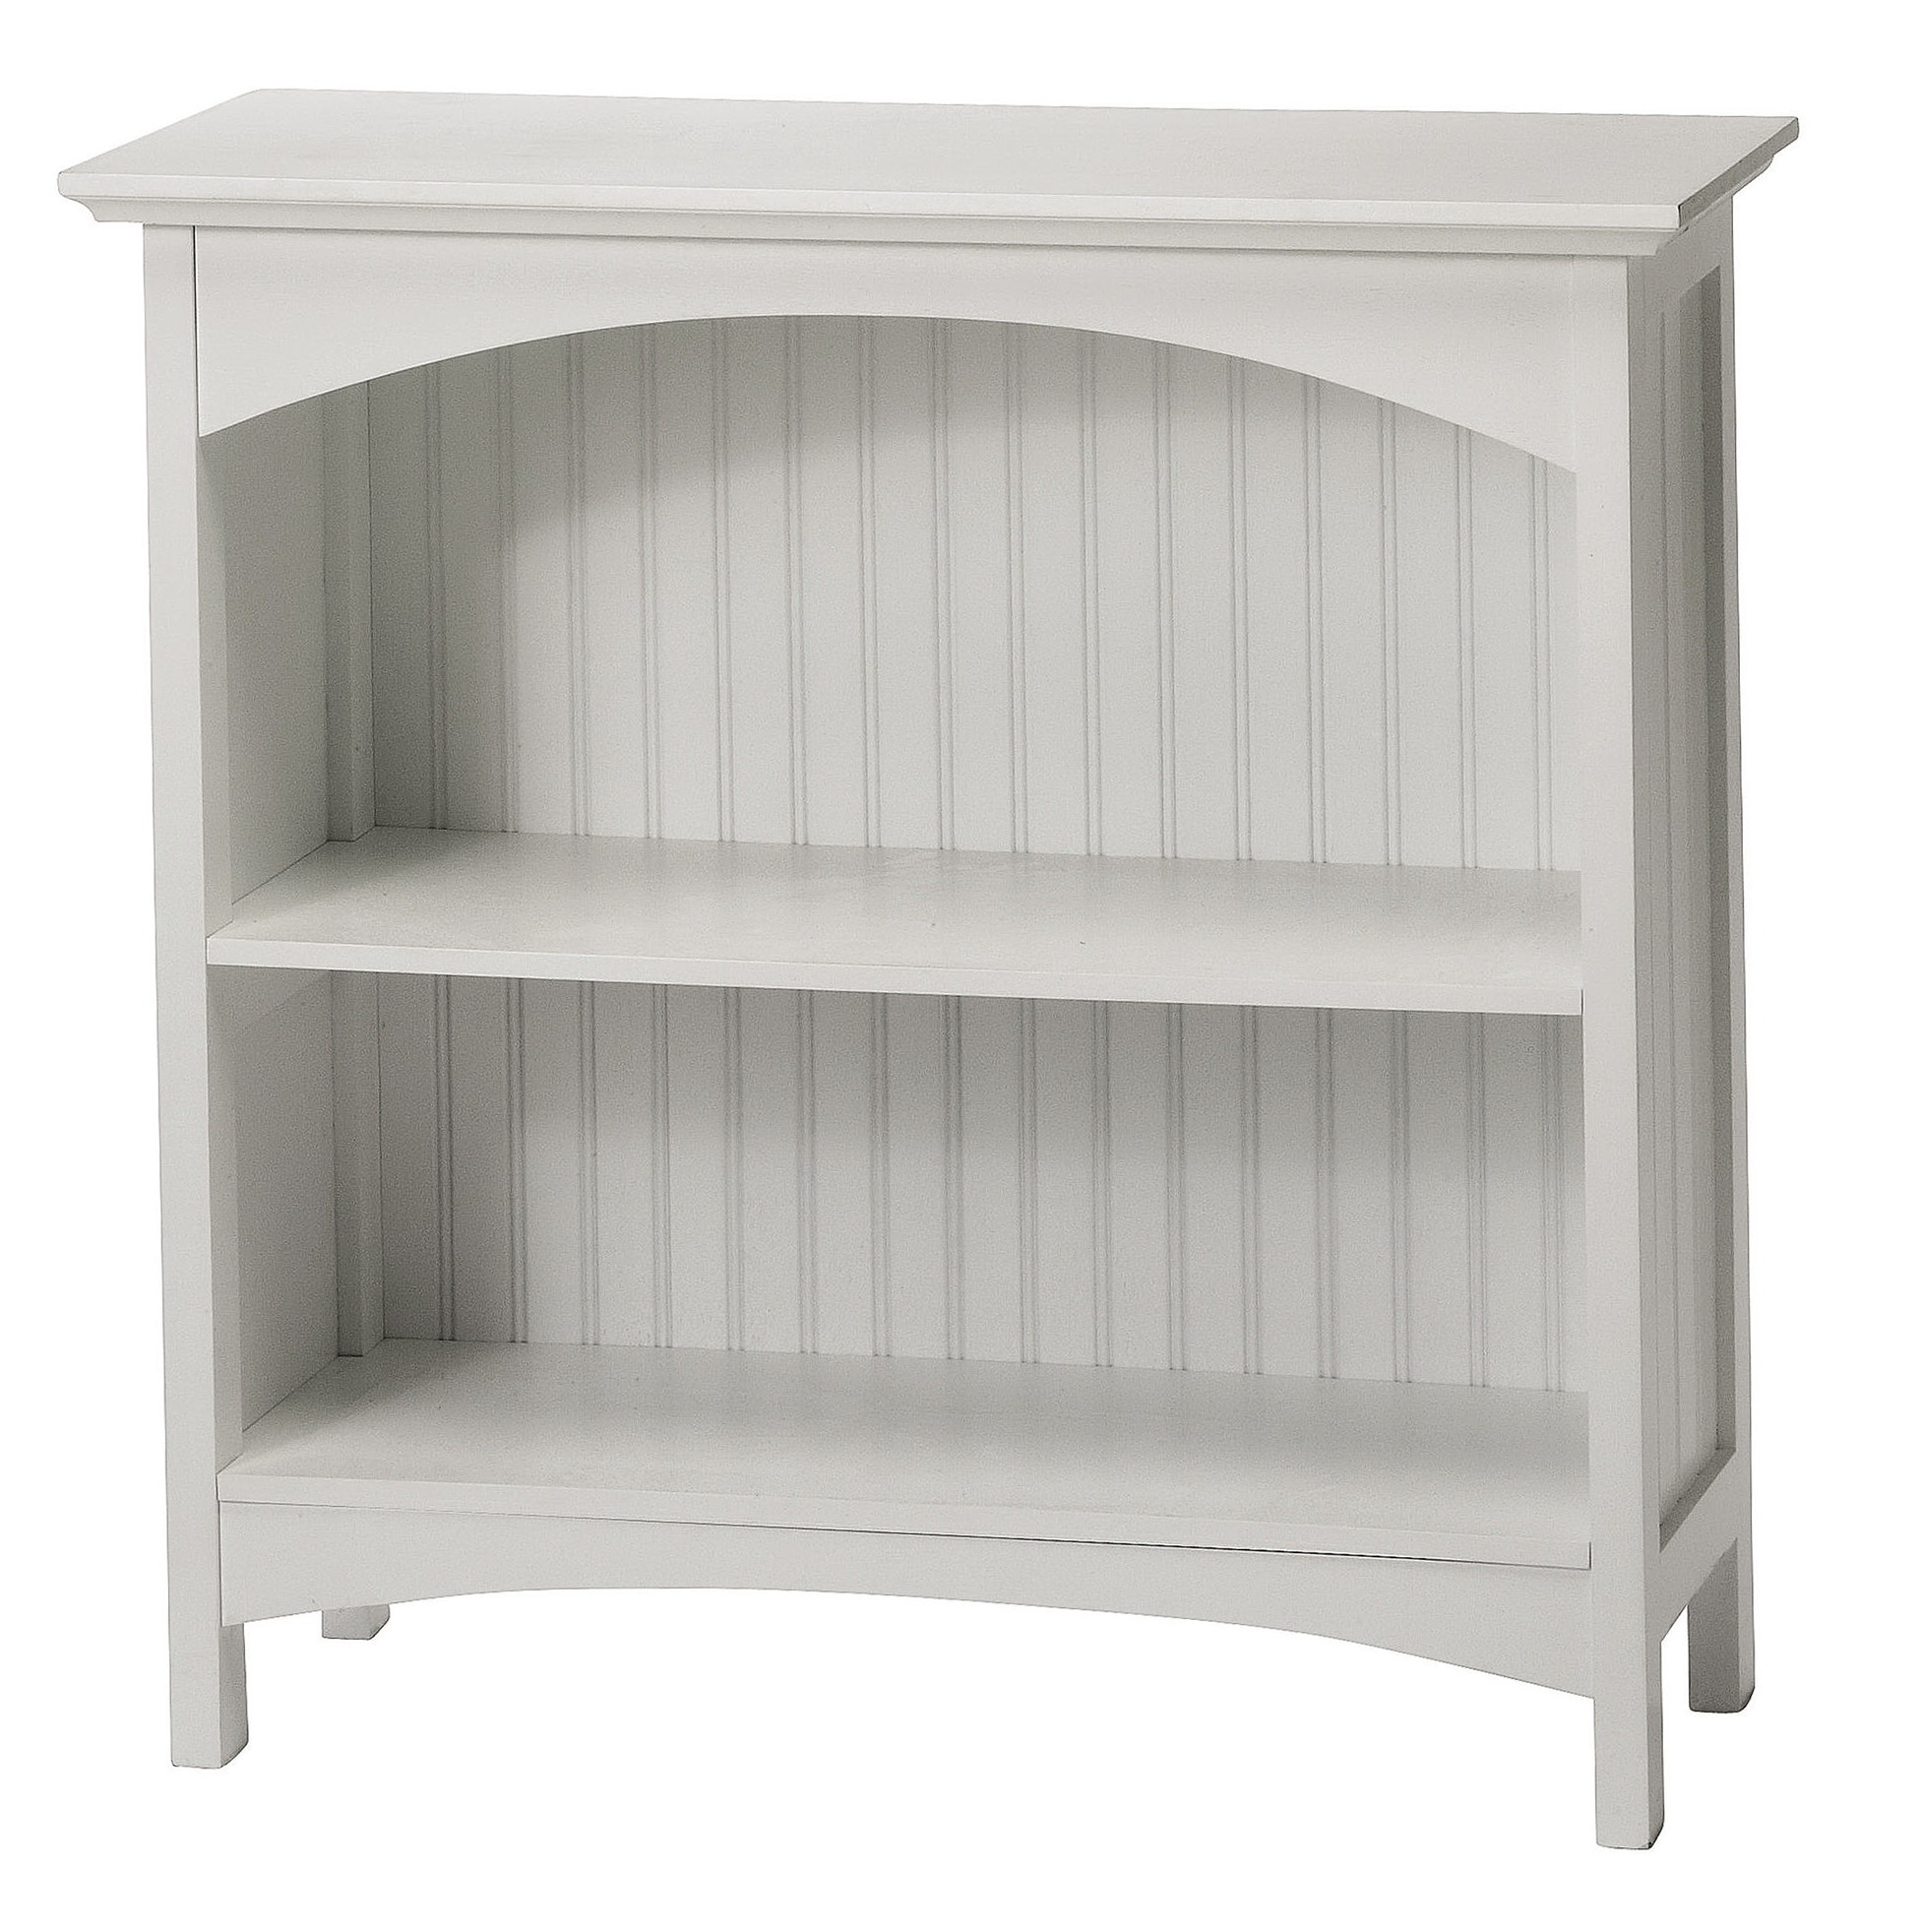 2 Shelf Bookcase White